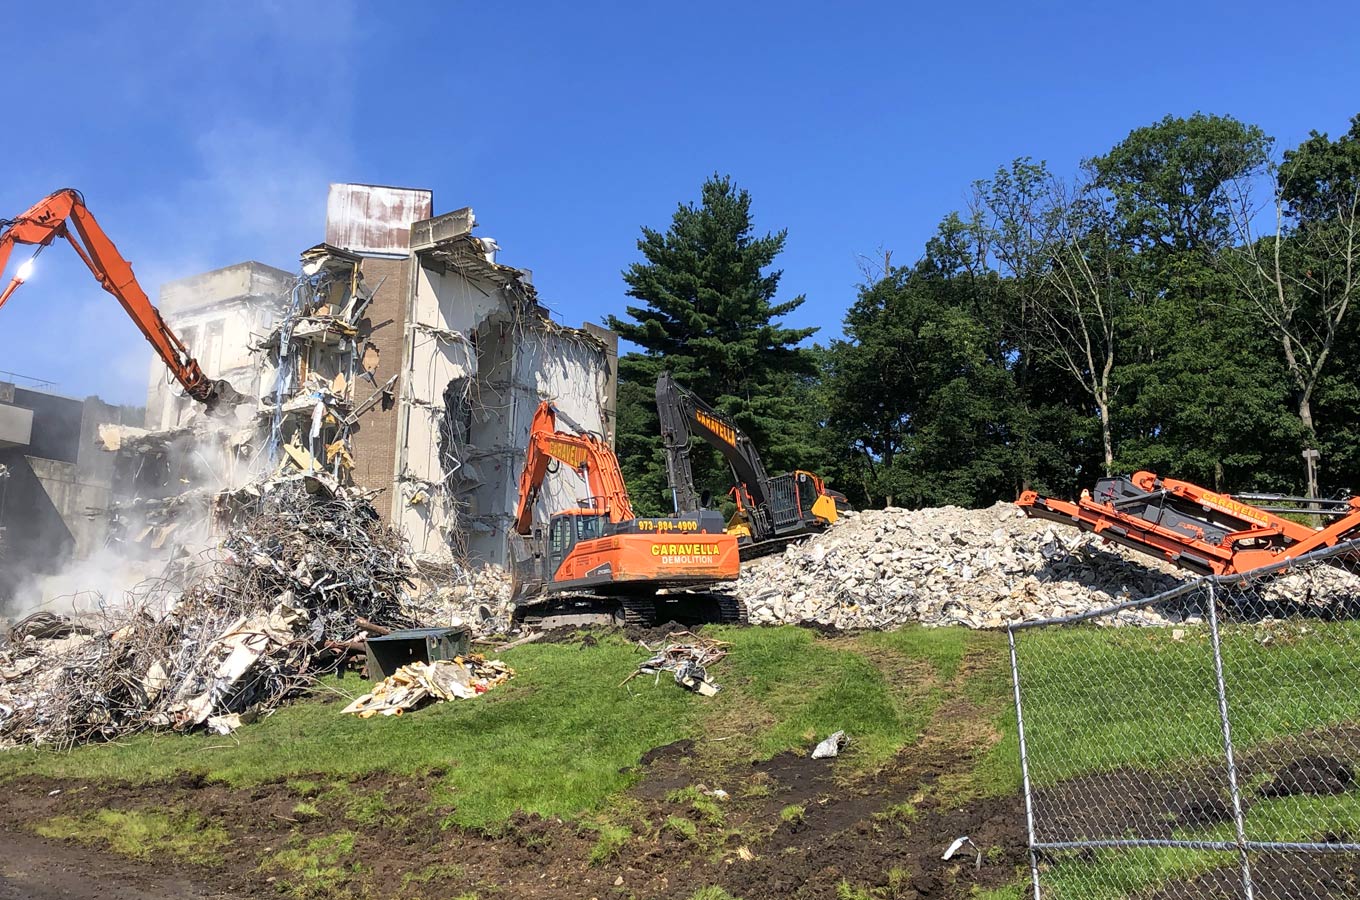 Demolition Services in Jersey City, NJ | Caravella Demolition